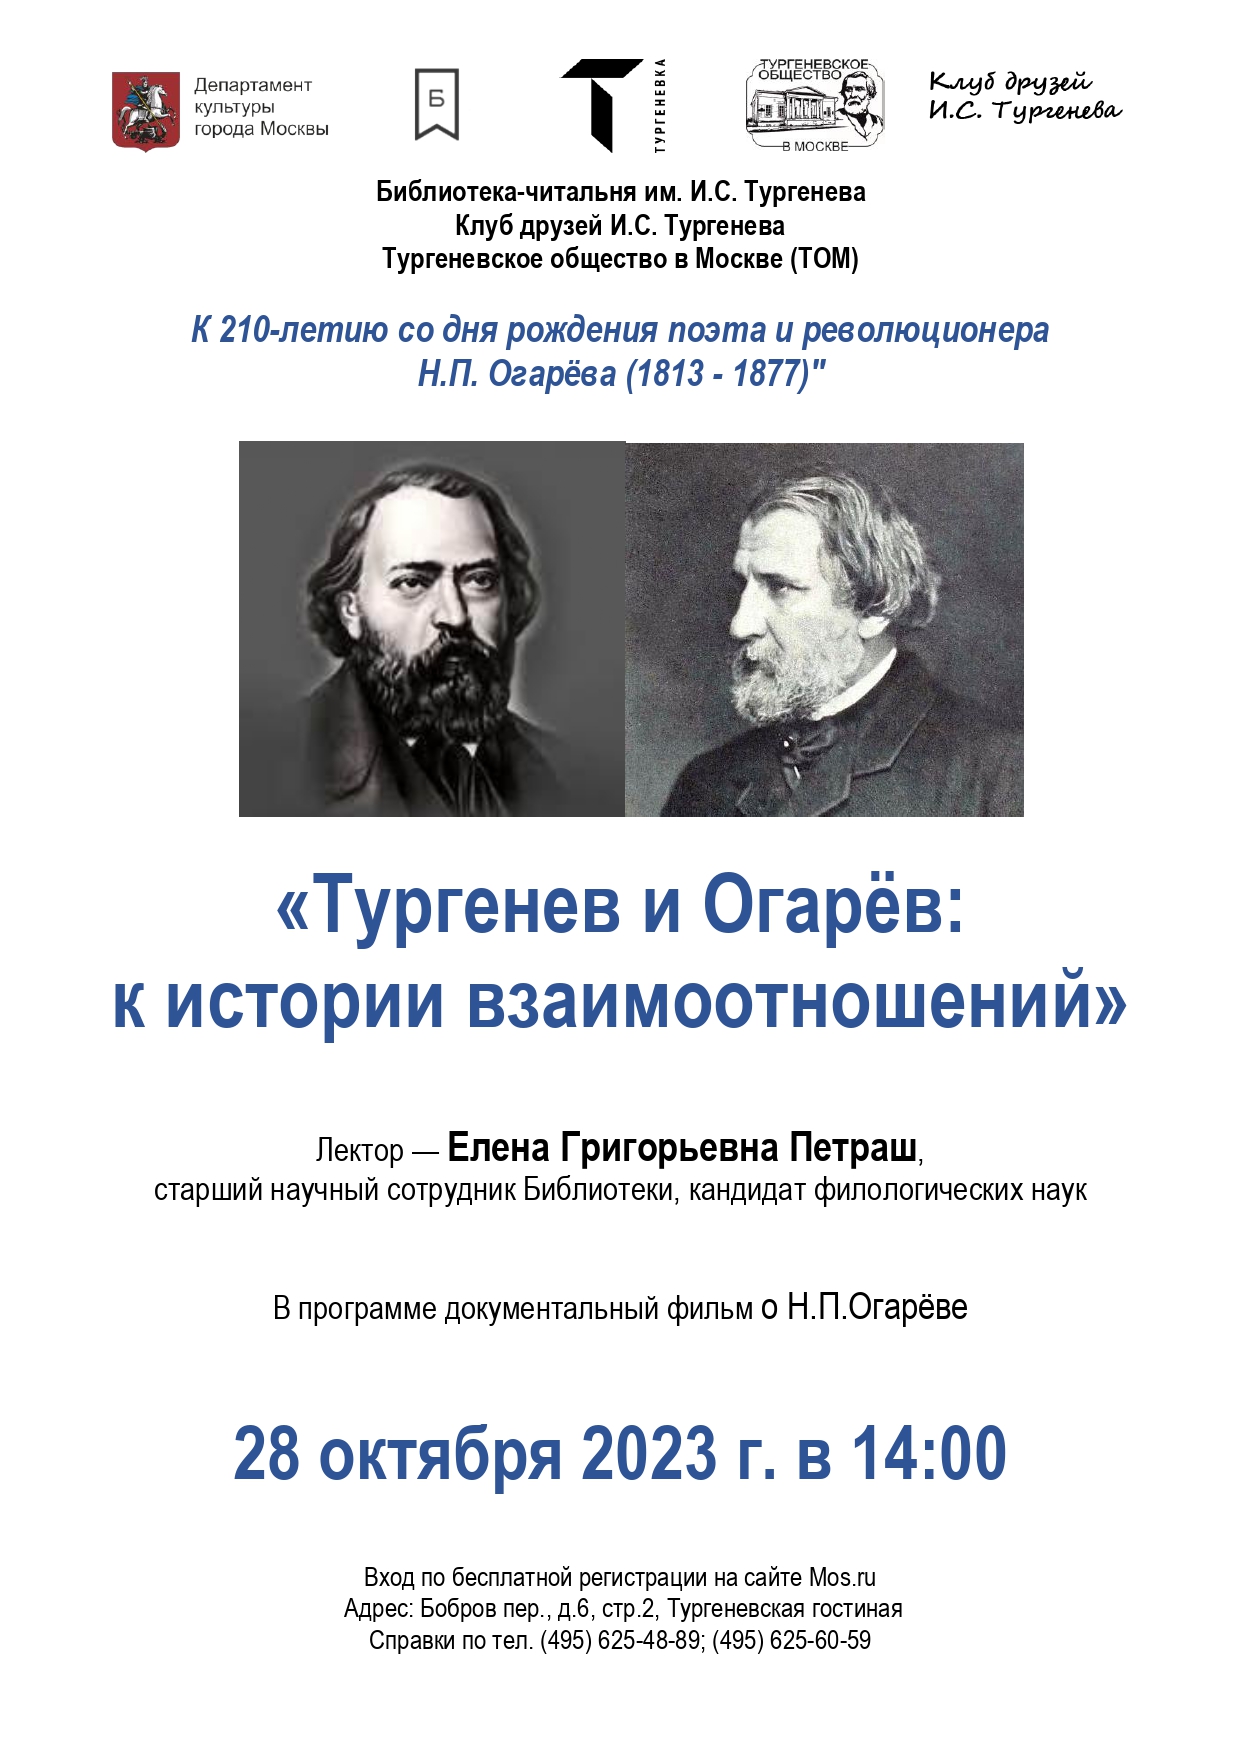 Совместное заседание Клуба друзей Тургенева и Тургеневского общества в Москве 28 октября 2023 года